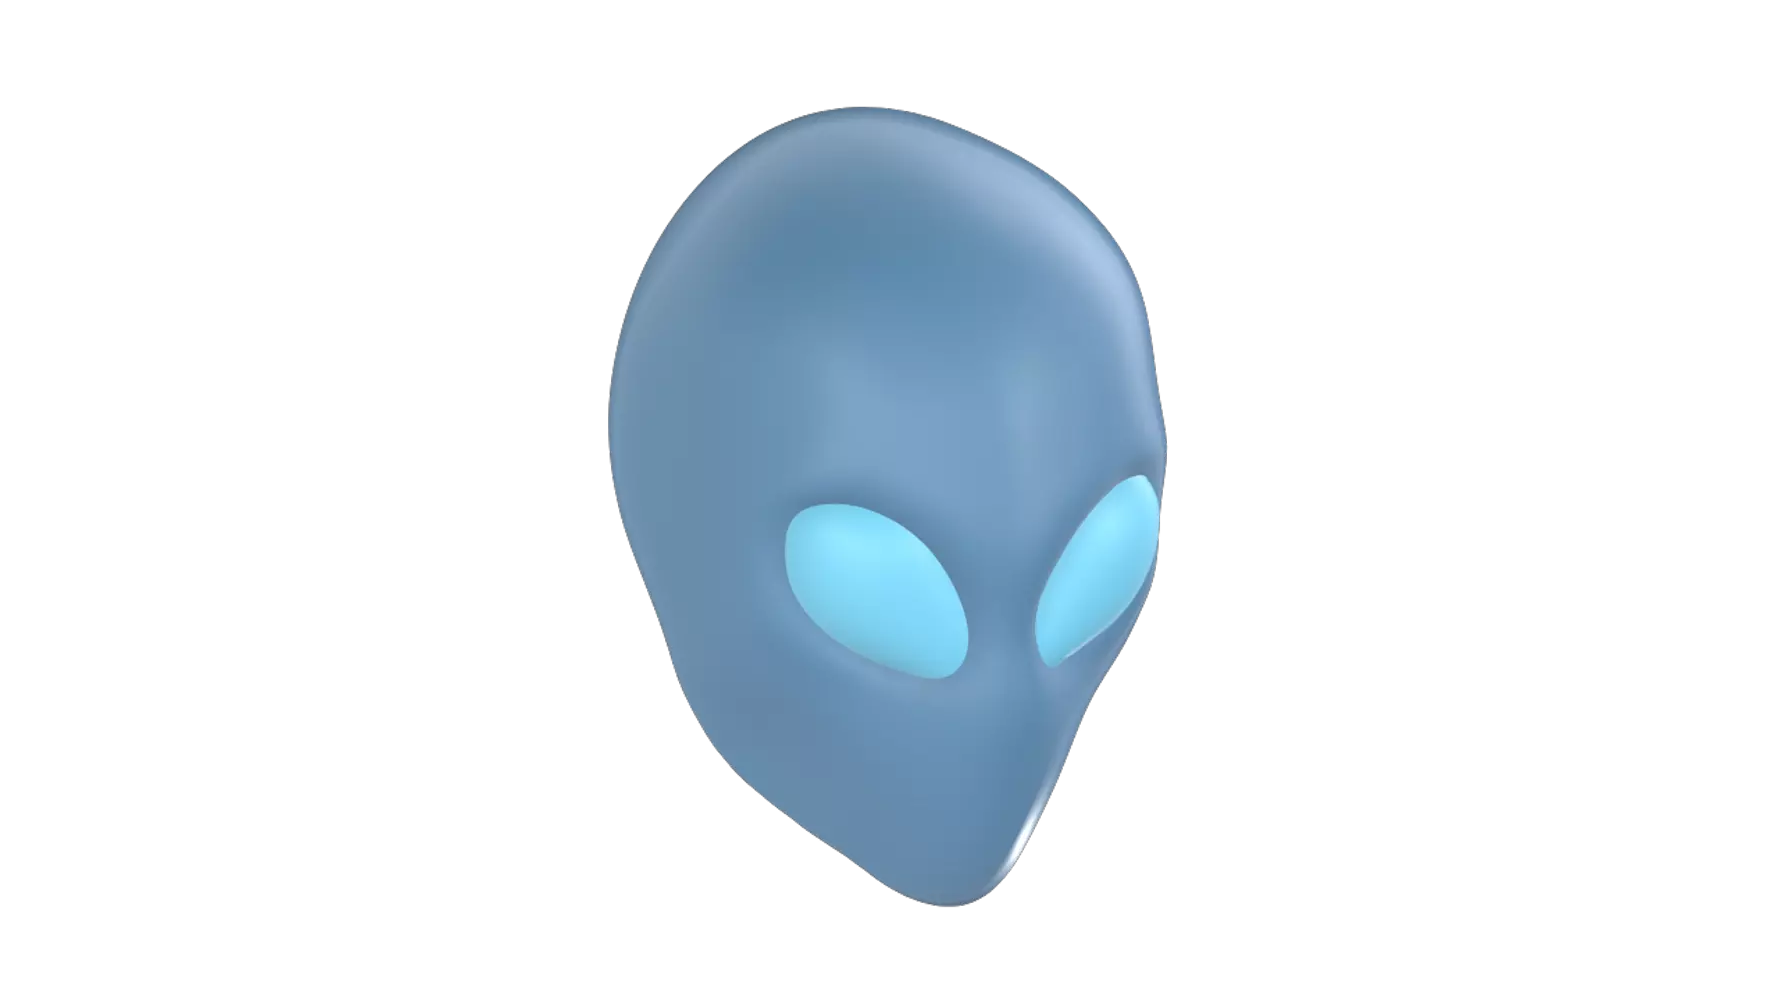 Alien 3D Graphic